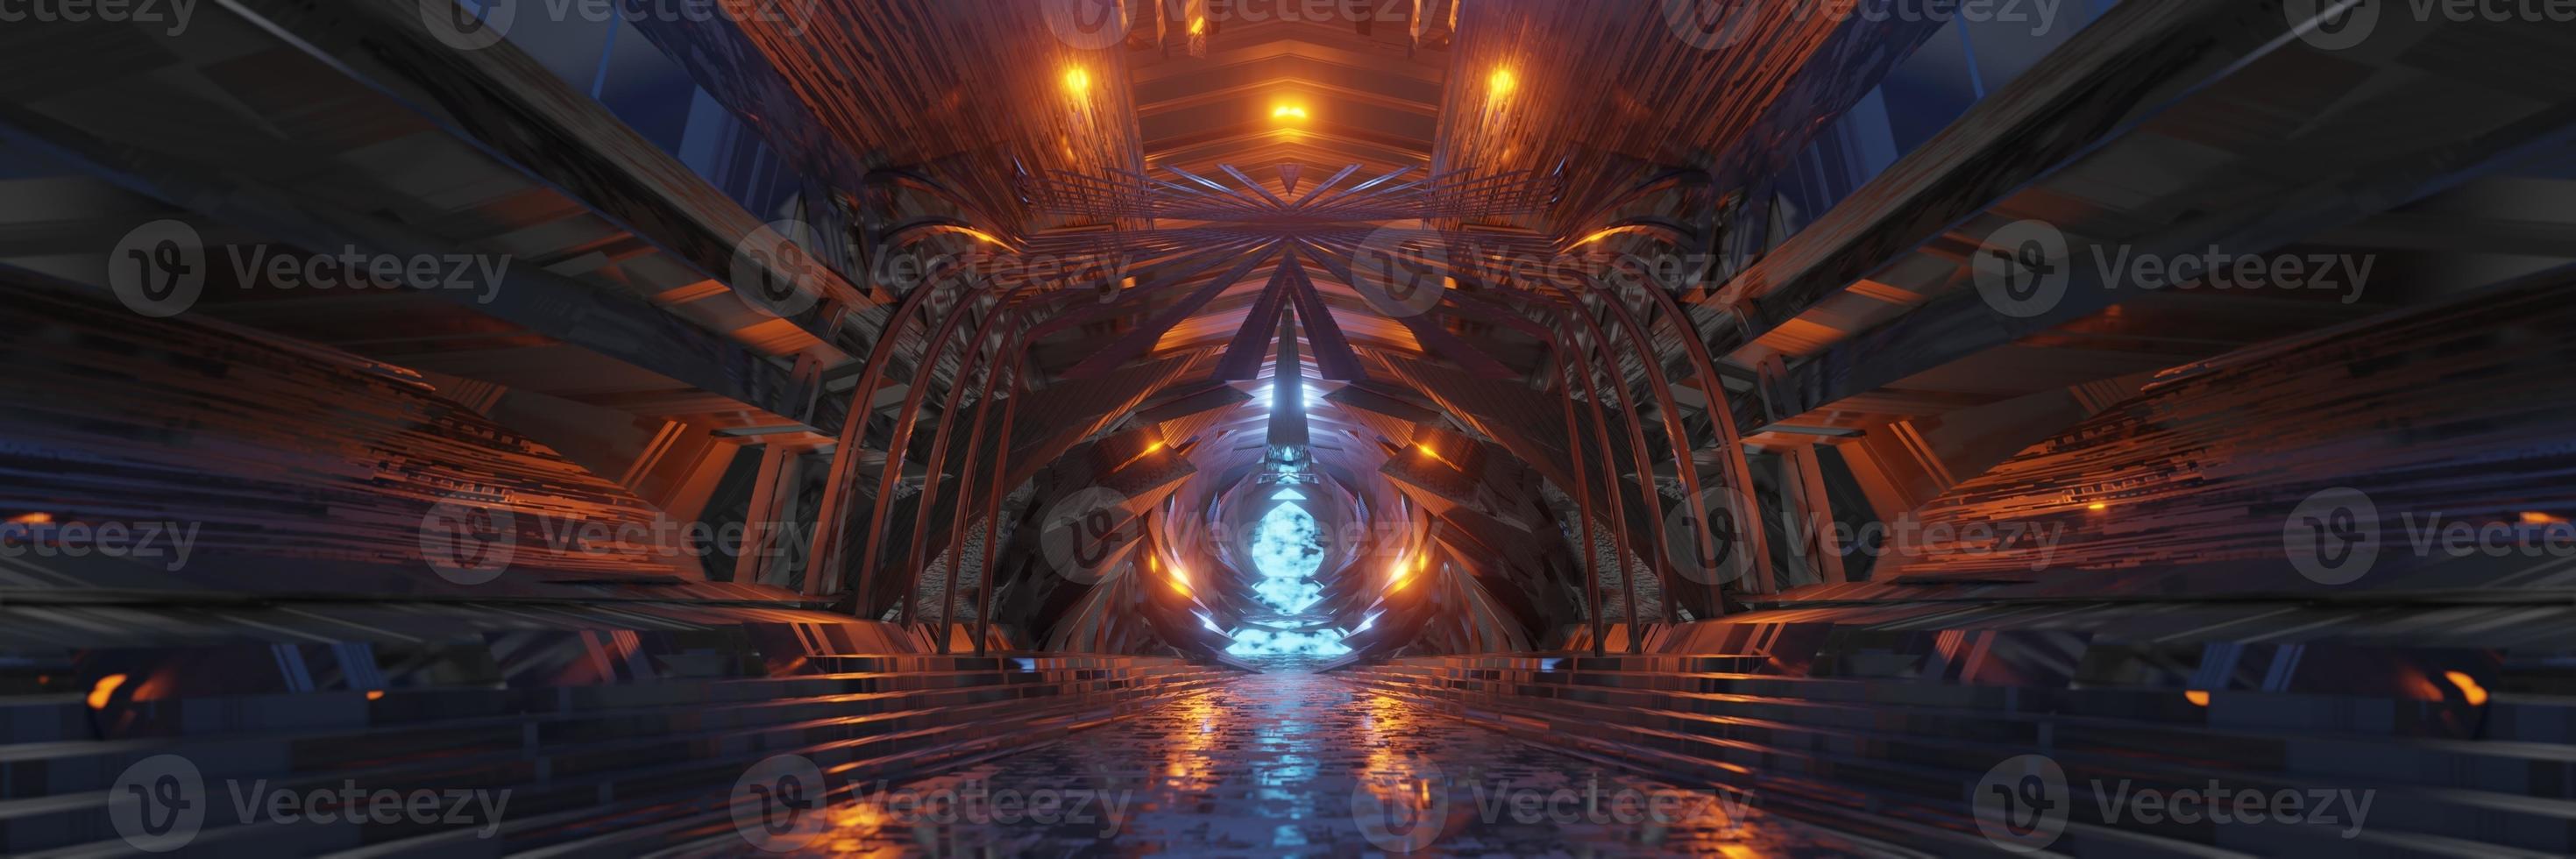 sci fi fantasia futura planeta alienígena grande salão edifício panorama fundo renderização em 3d foto